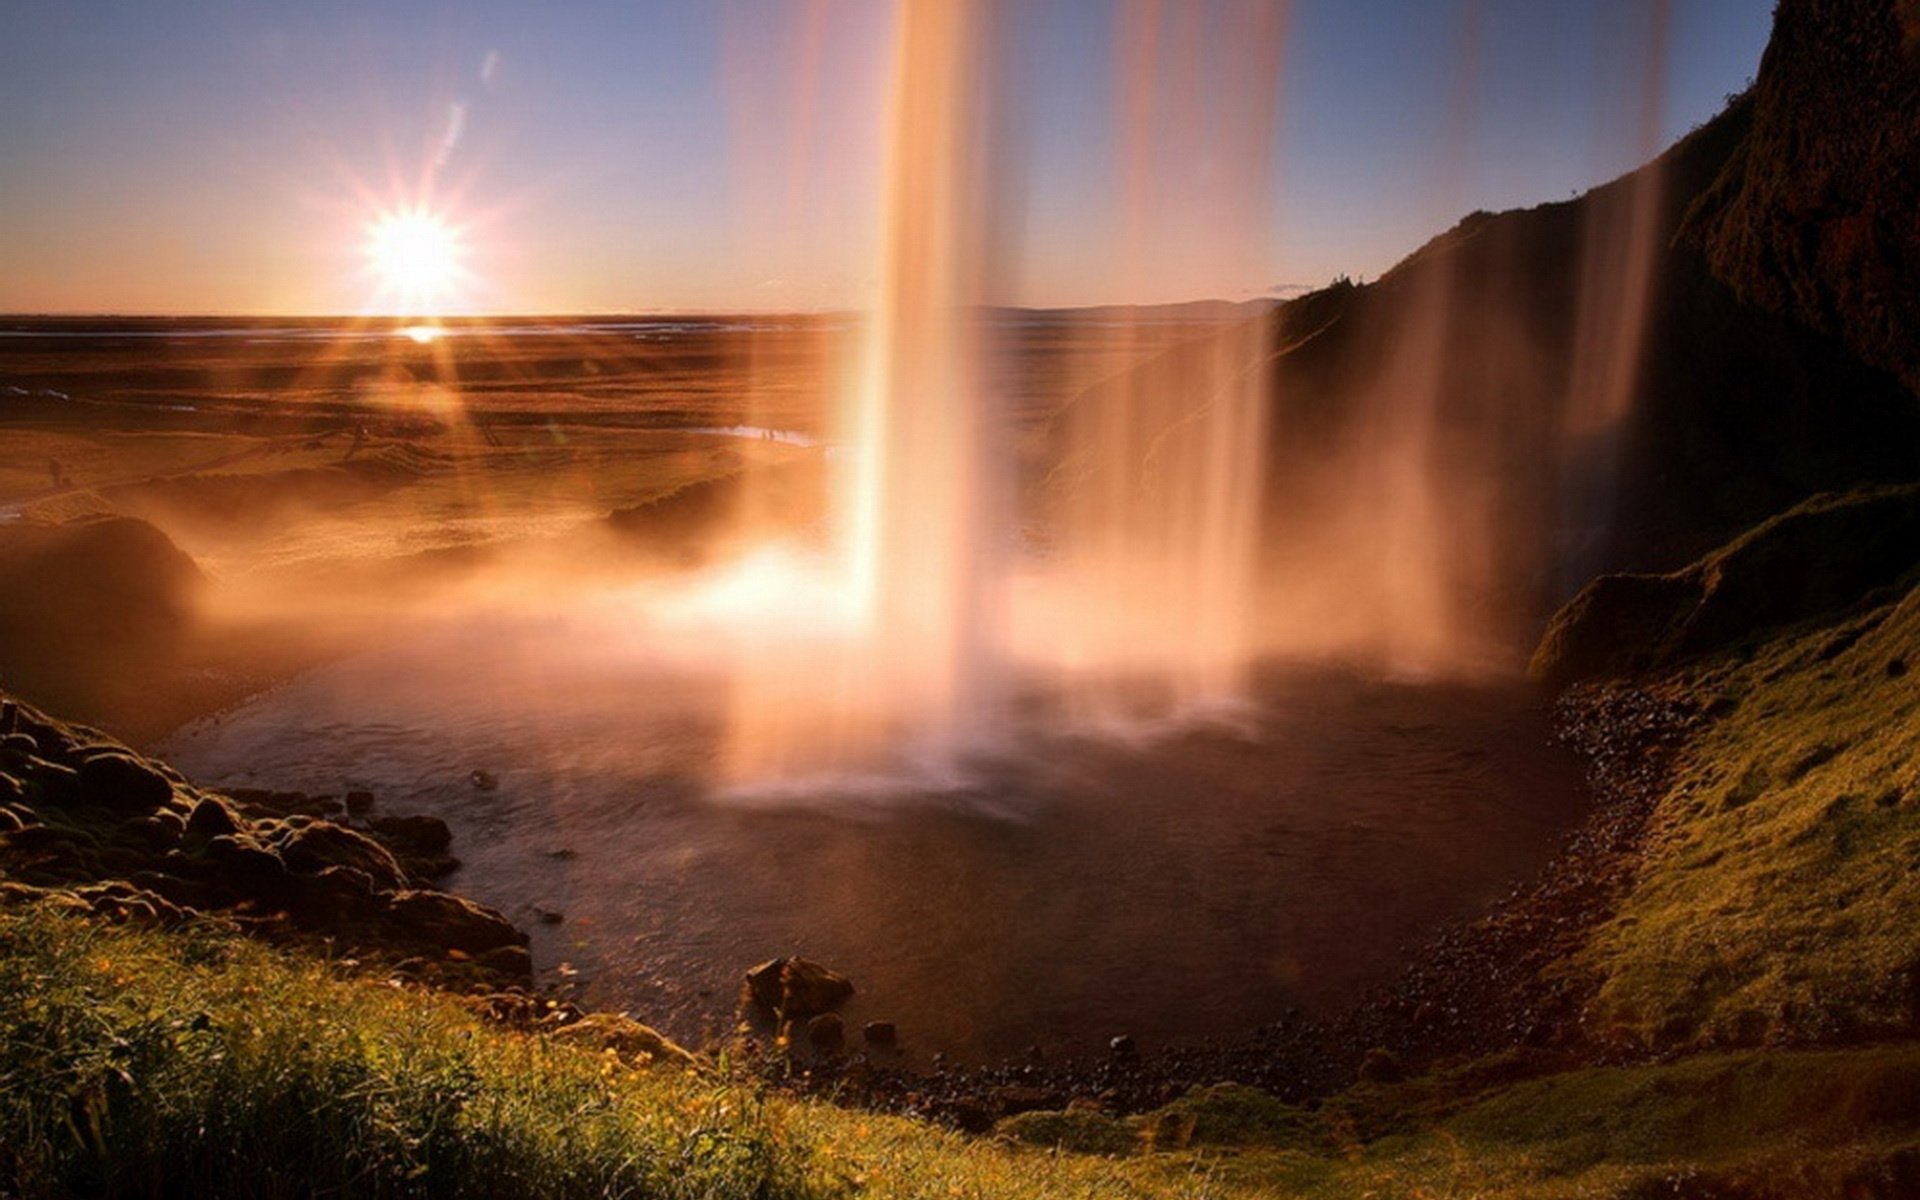 Открой удивительный мир. Водопад Годафосс, Исландия. Пейзажи Джеймса Эпплтона. Водопад Сельяландсфосс, Исландия закат. Удивительные пейзажи.